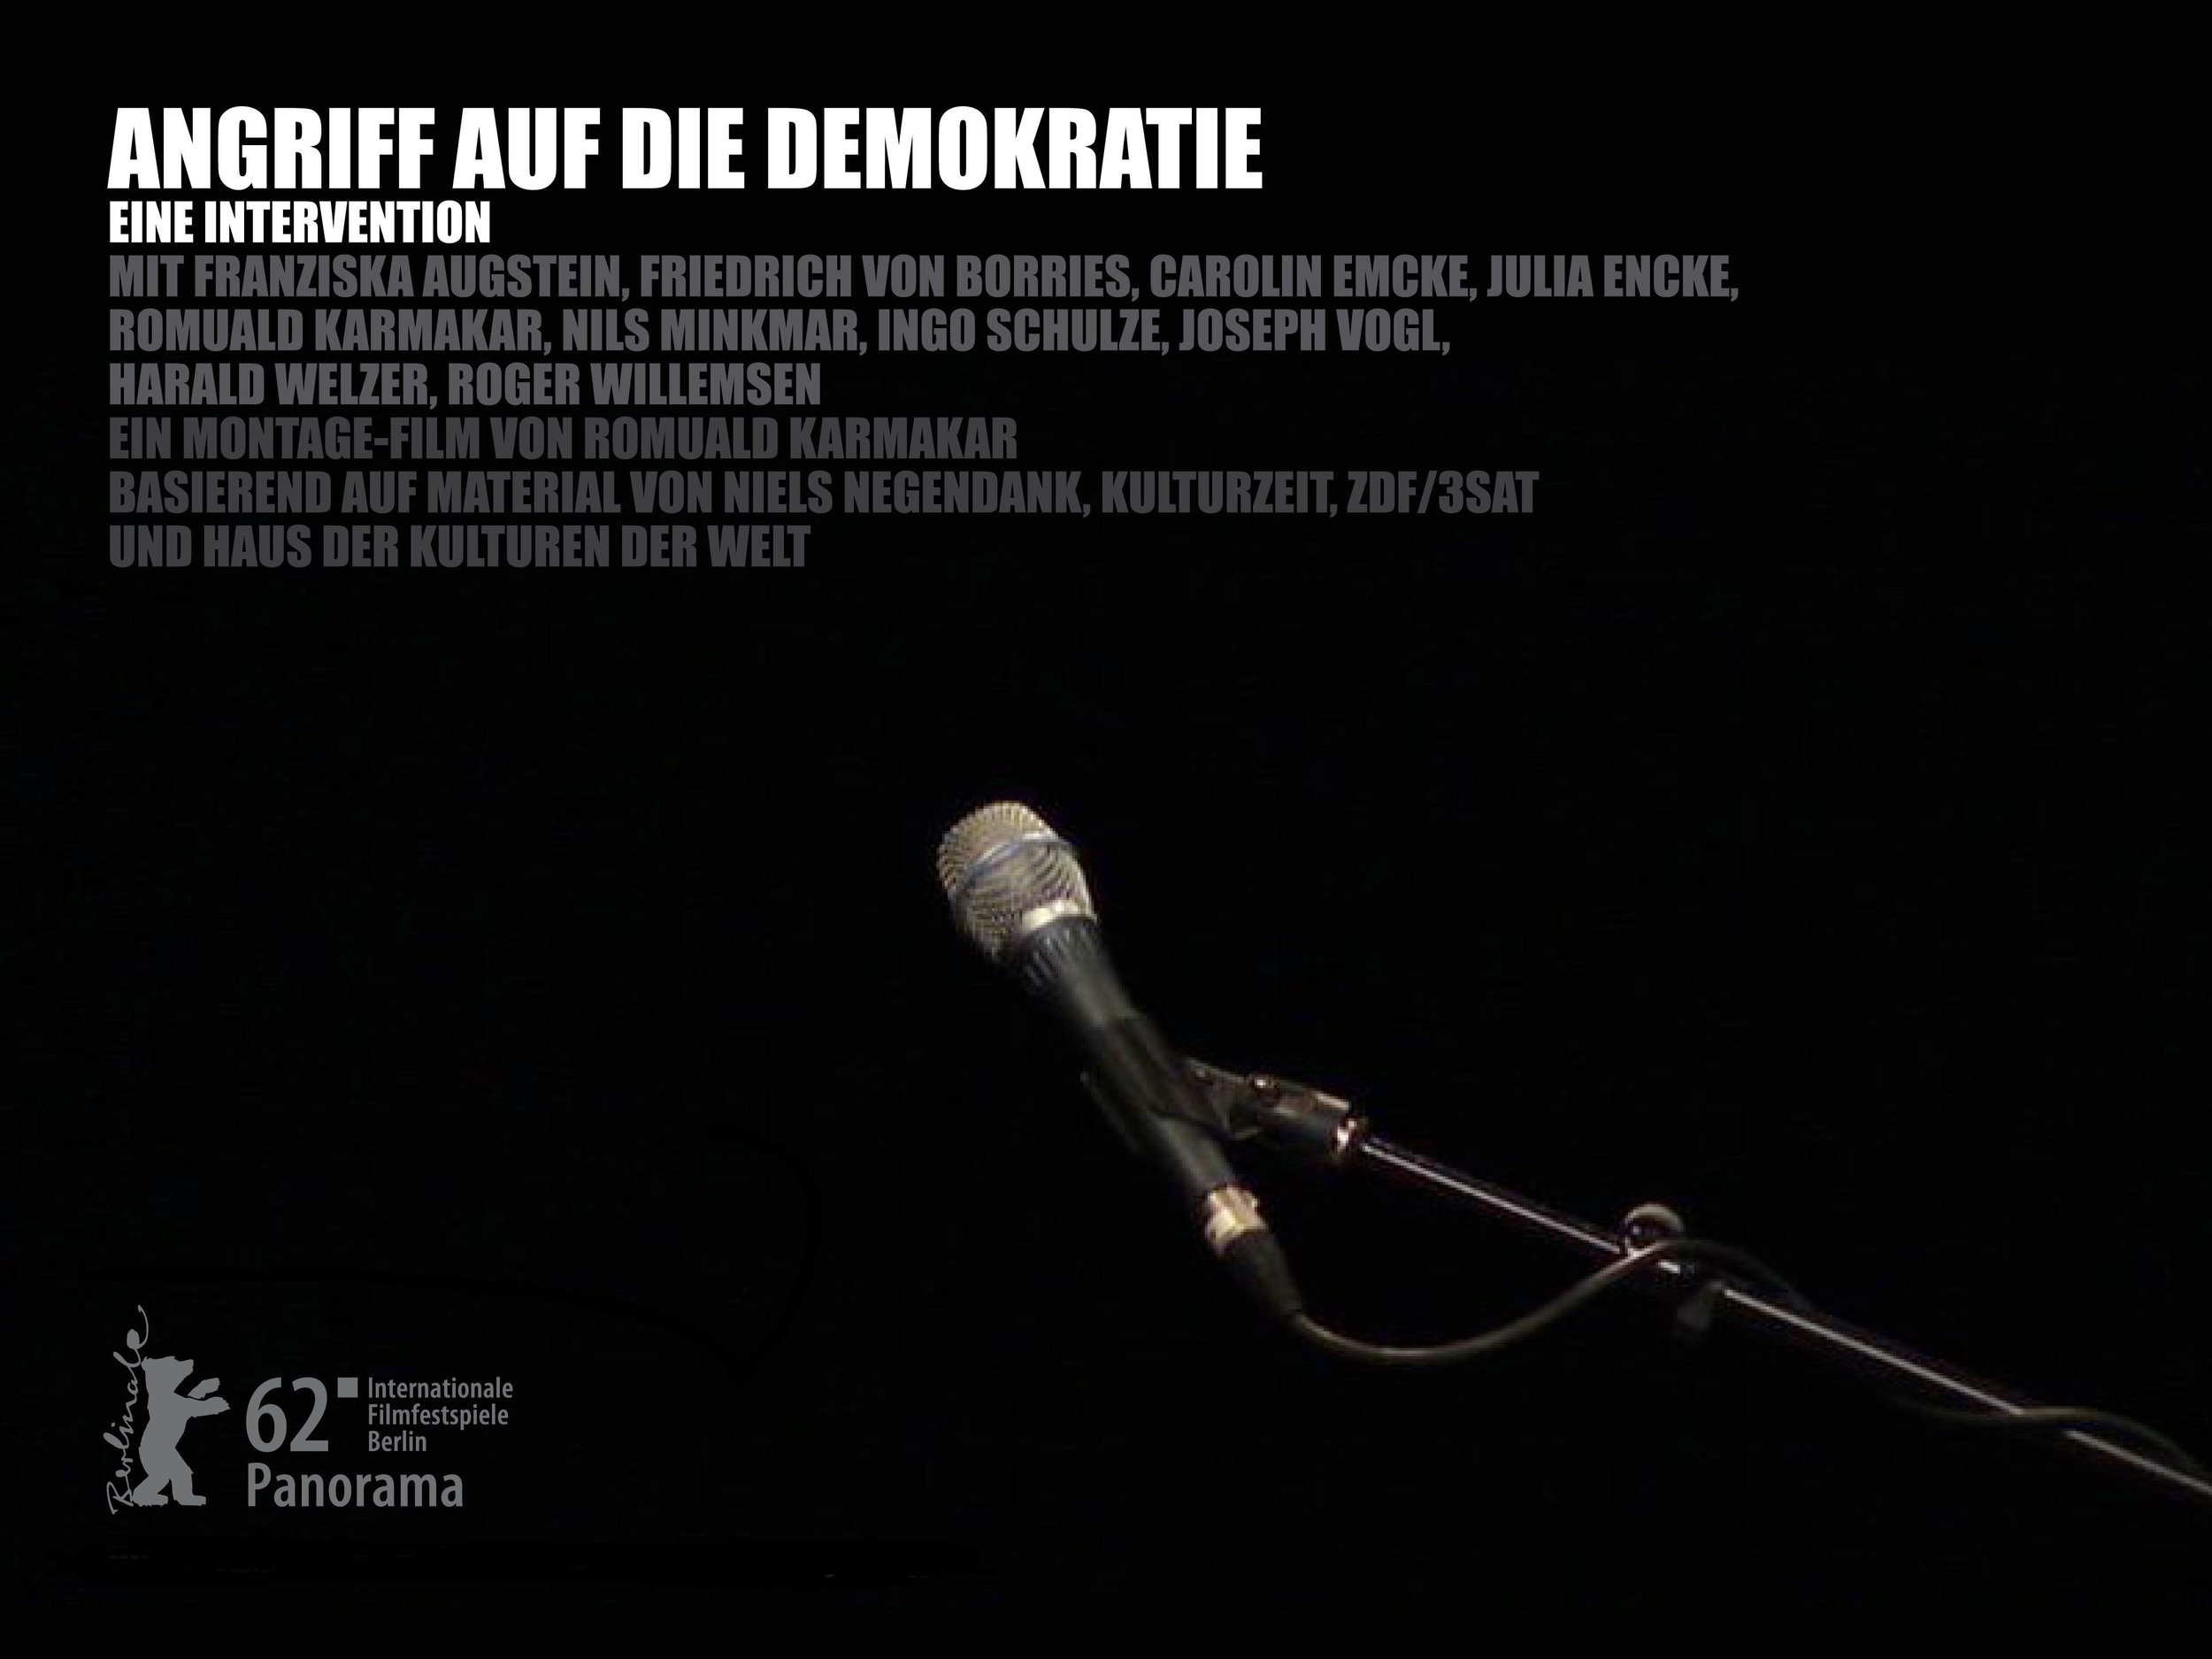 ANGRIFF AUF DIE DEMOKRATIE – EINE INTERVENTION I DEMOCRACY UNDER ATTACK – AN INTERVENTION